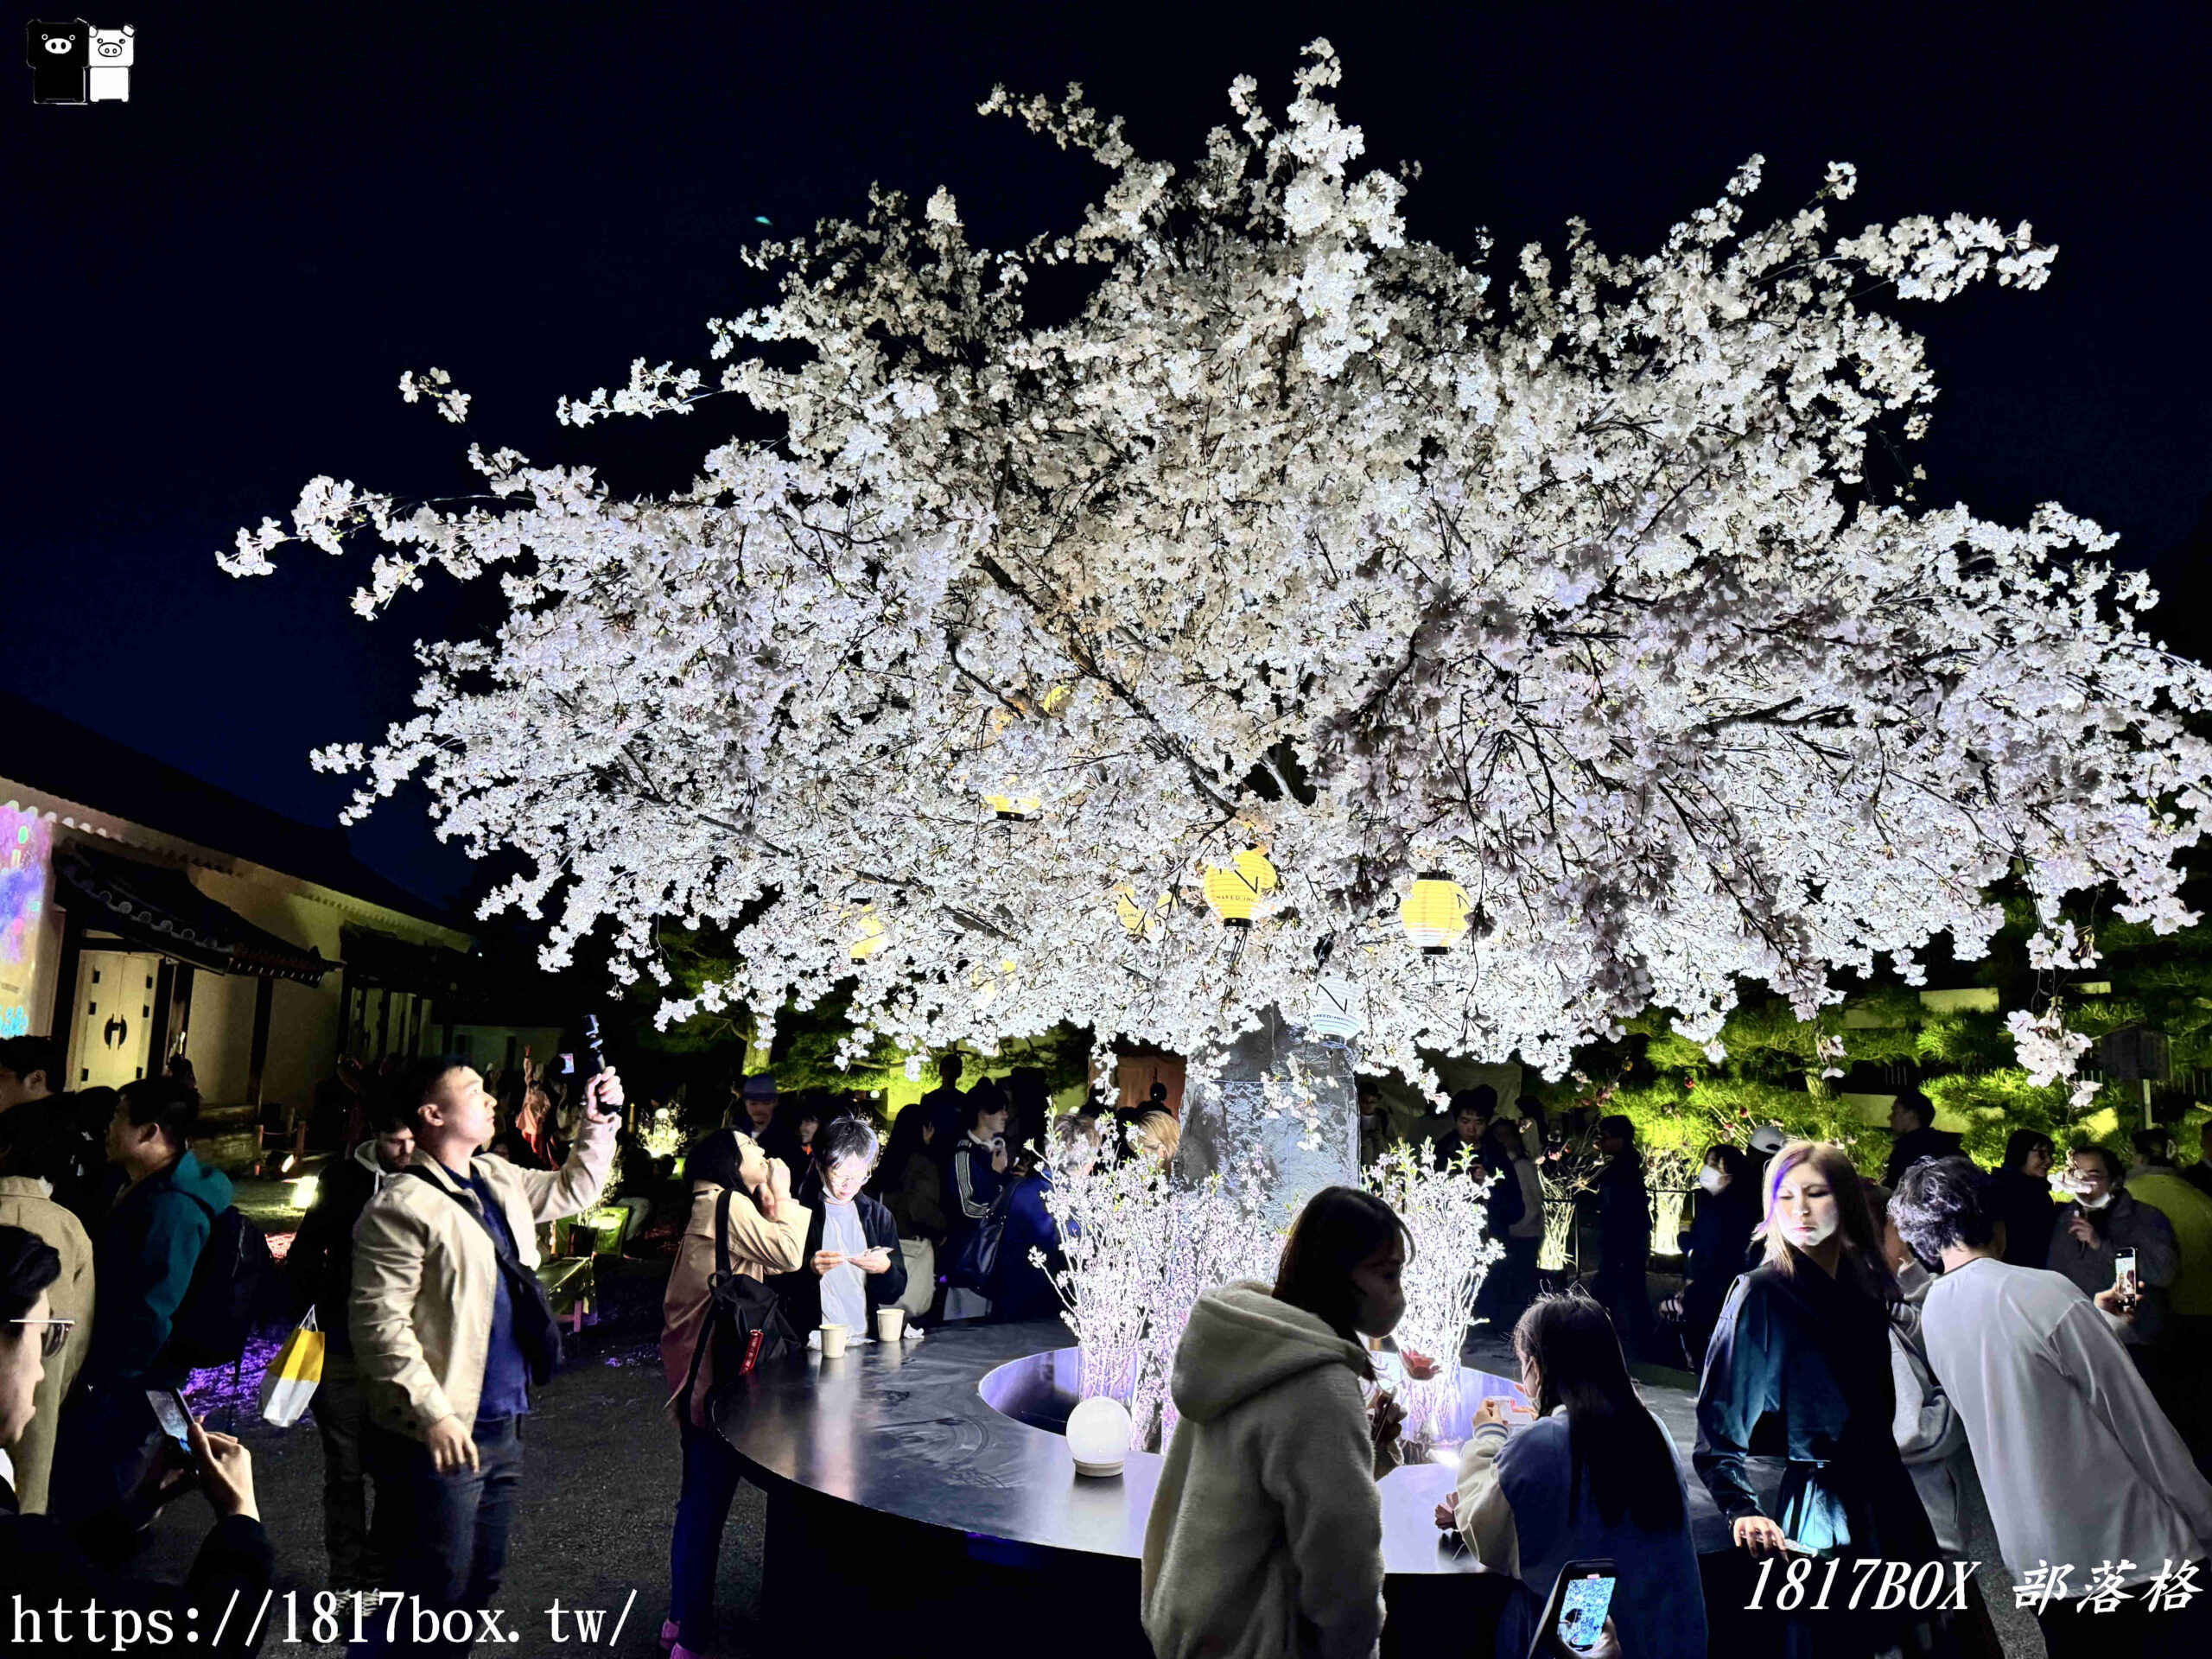 【京都景點】京都二條城。NAKED櫻花祭。夜櫻光雕秀夢幻登場